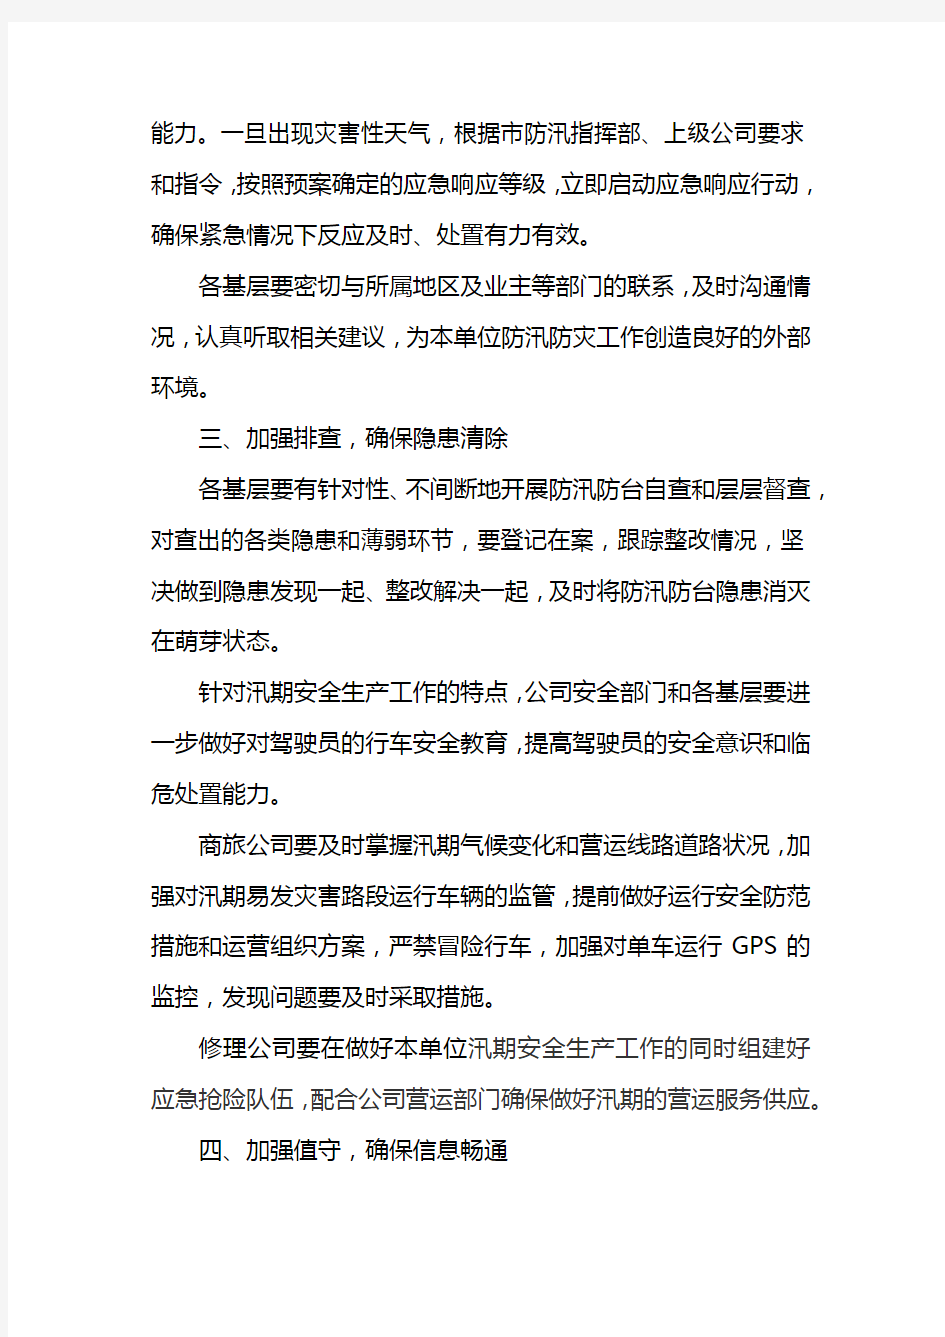 上海汽车租赁公司关于做好2015年汛期安全生产工作的通知